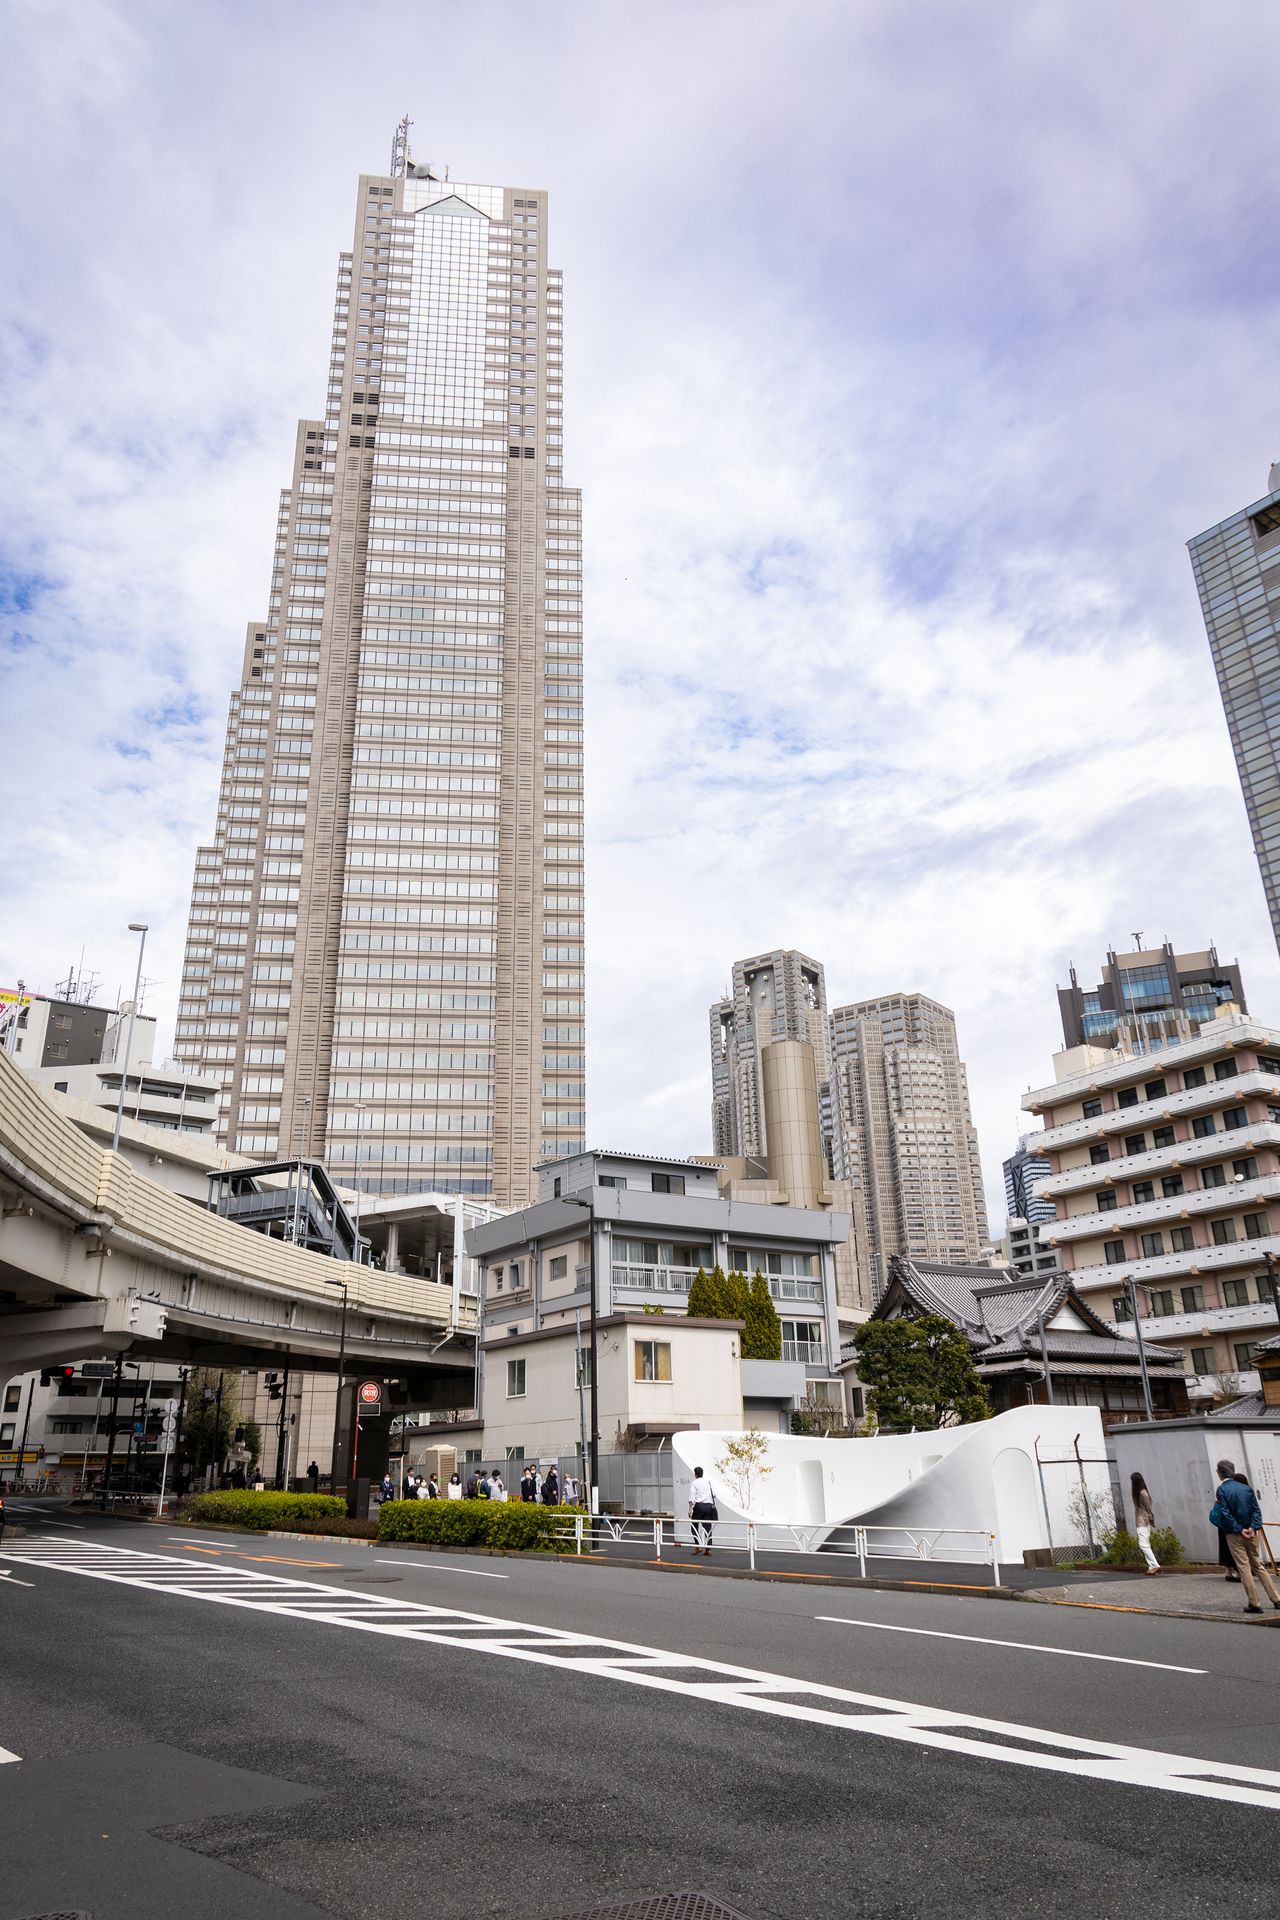 如同悬浮在城市建筑之中的纯白色公厕。背后可见东京柏悦酒店和东京都政府办公大厦